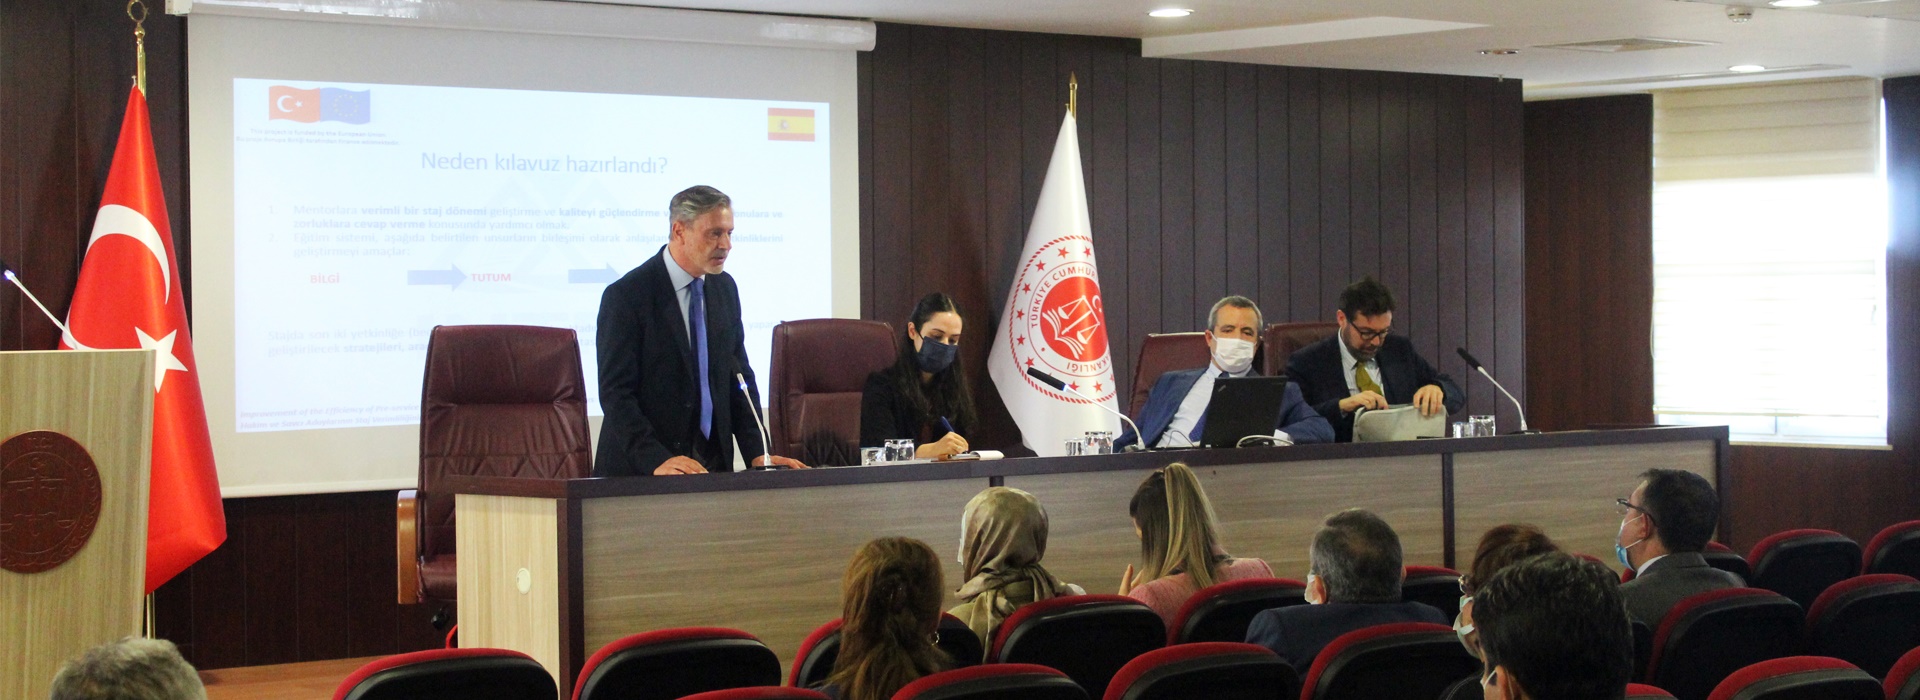 Hakim ve Savcı Adaylarının Staj Verimliliğinin ve Etkinliğinin Artırılması Projesi kapsamında seminer düzenlendi.